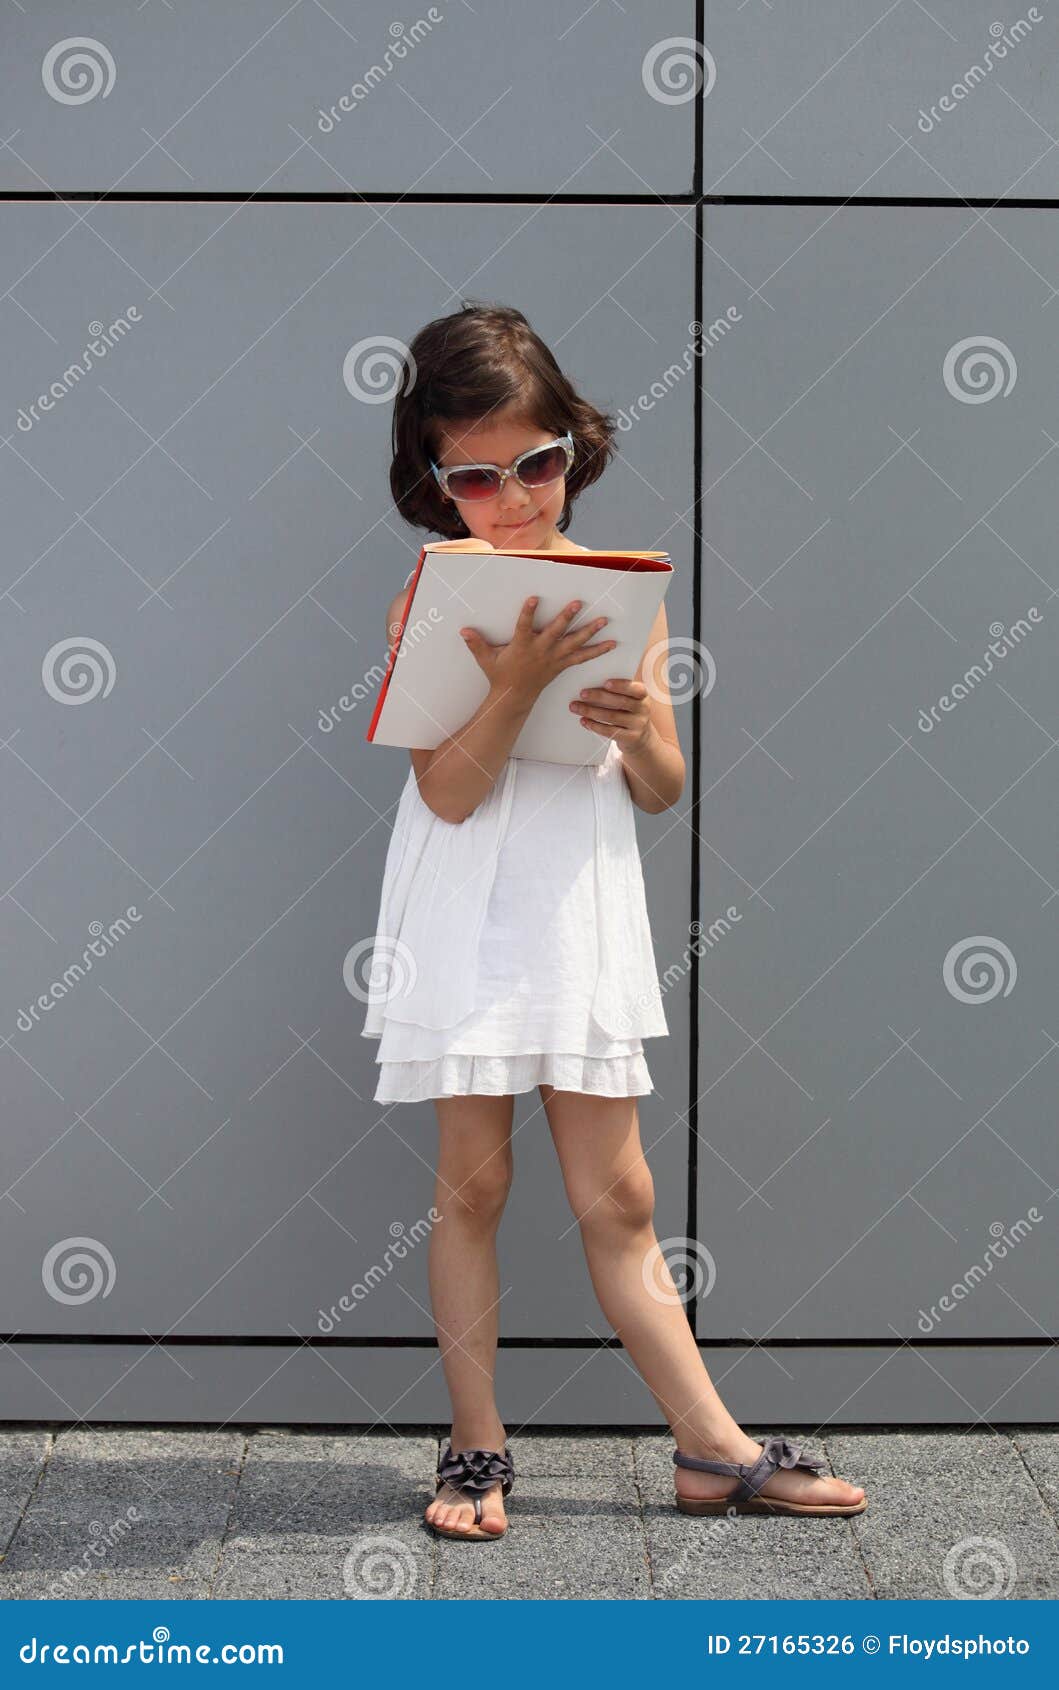 Meisje dat met zonnebril een tijdschrift leest. Toekomstige onderneemster die zich voor een de bureaubouw muur bevindt en een bedrijfstijdschrift leest.